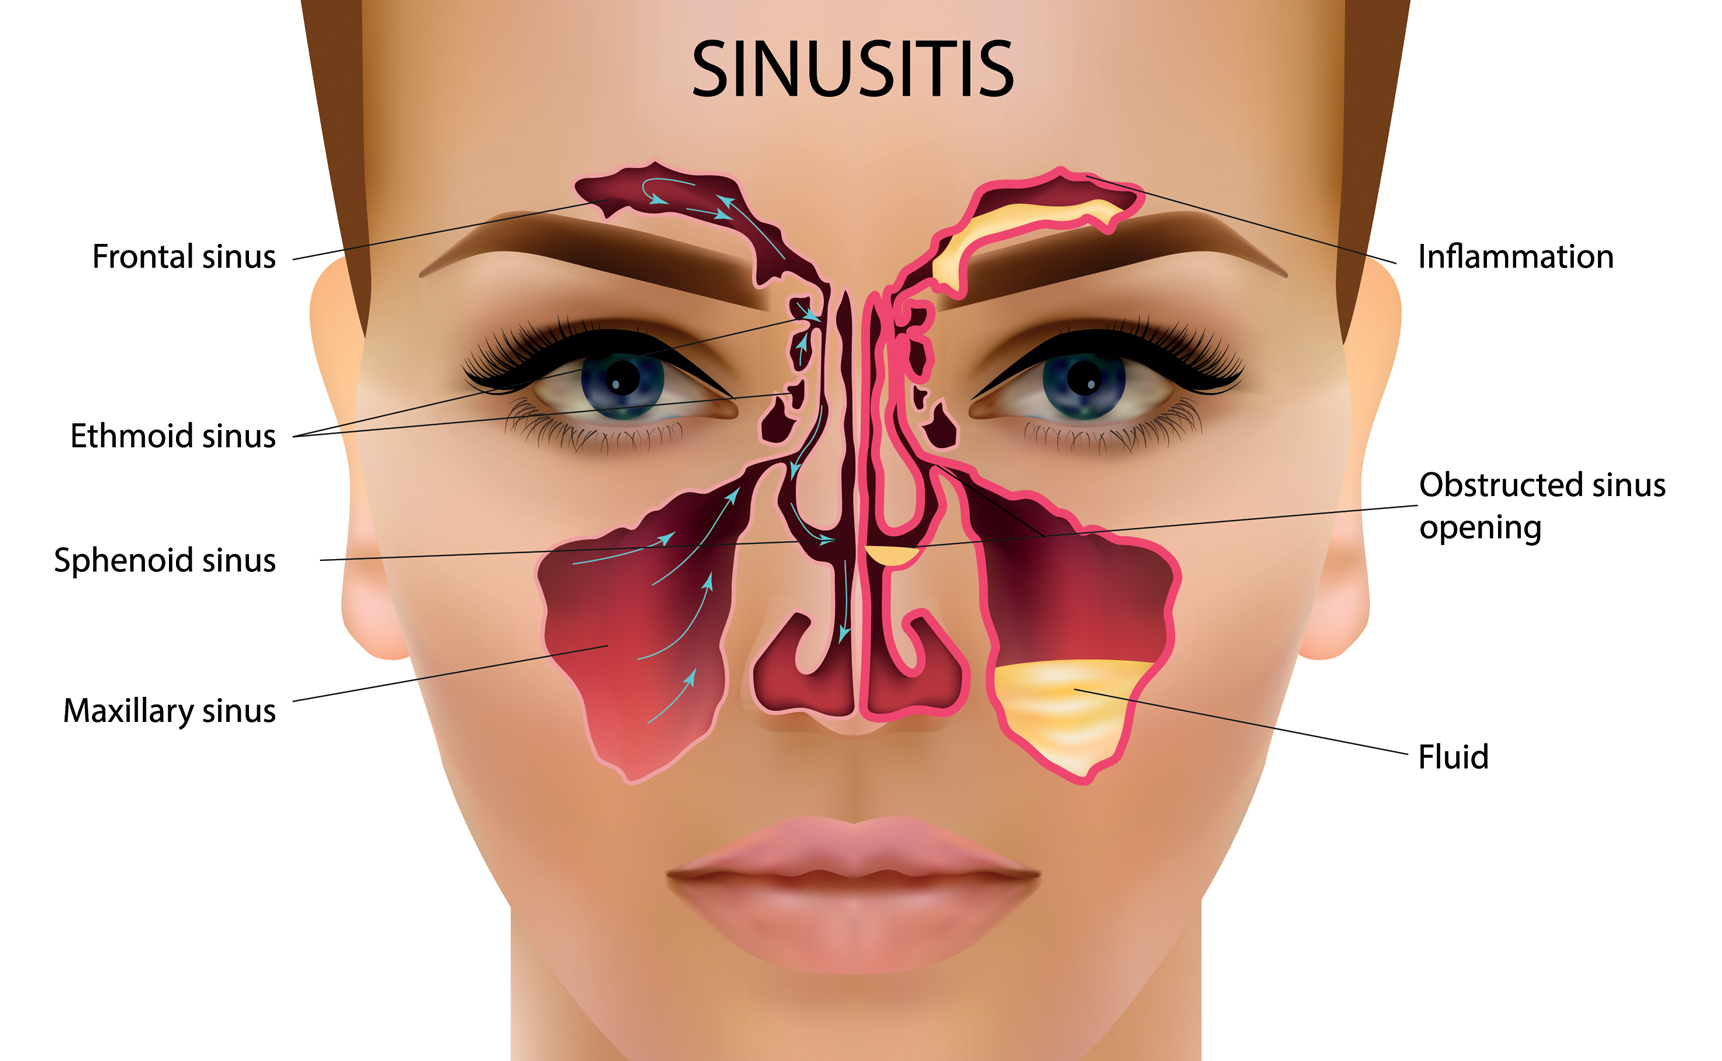 La sinusite peut causer un syndrome de choc toxique